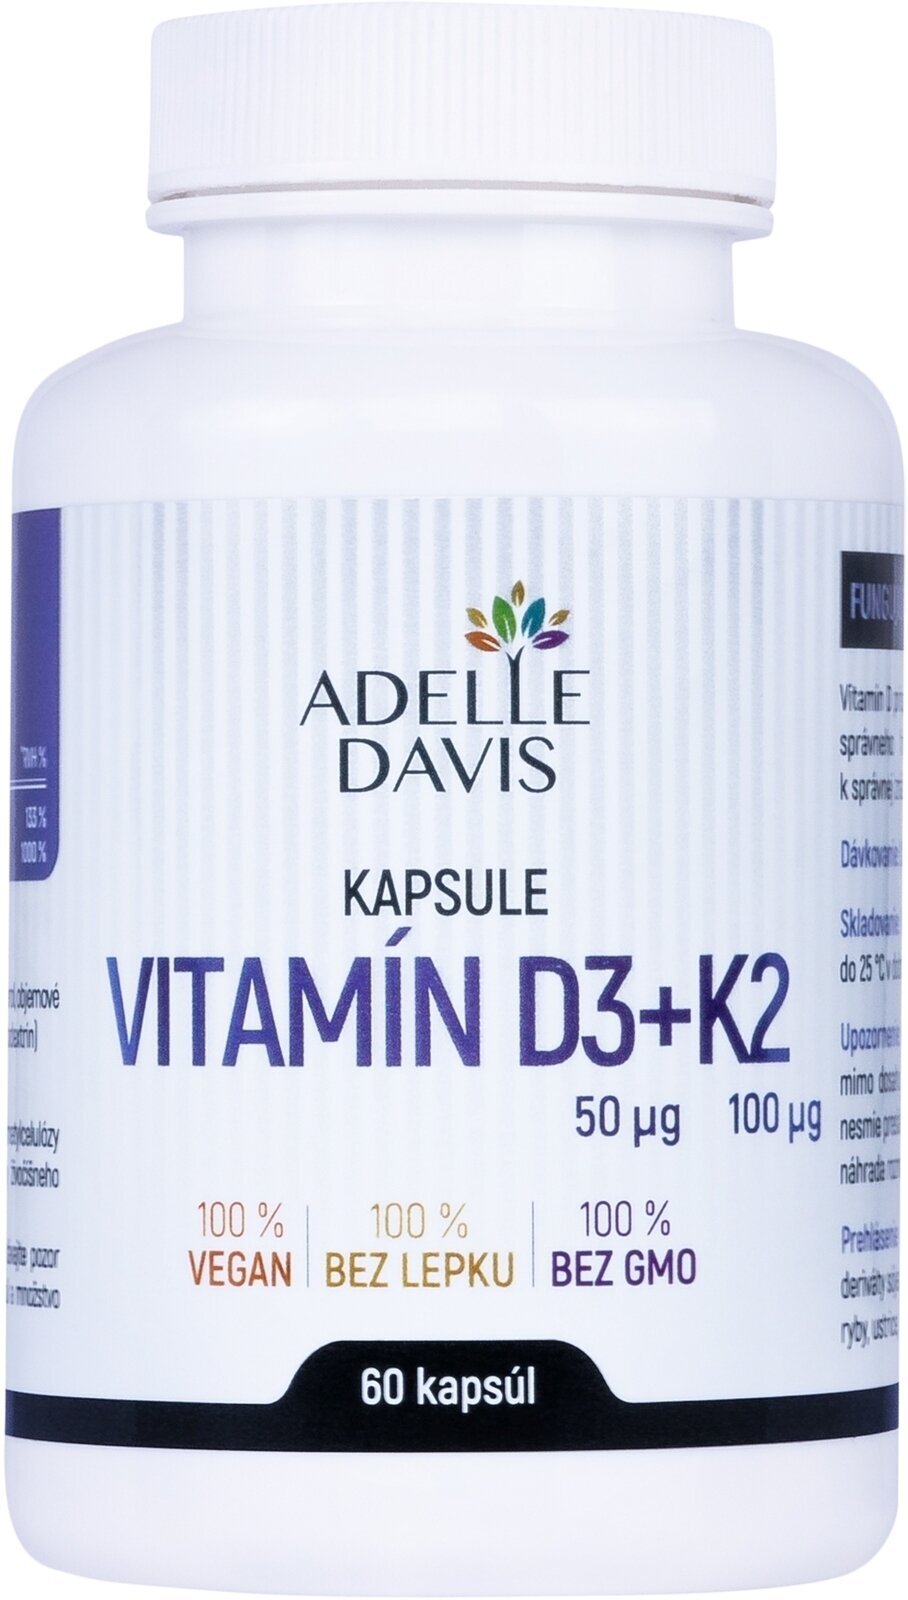 Βιταμίνη D Adelle Davis Vitamin D3 + K2 60 Capsules Βιταμίνη D